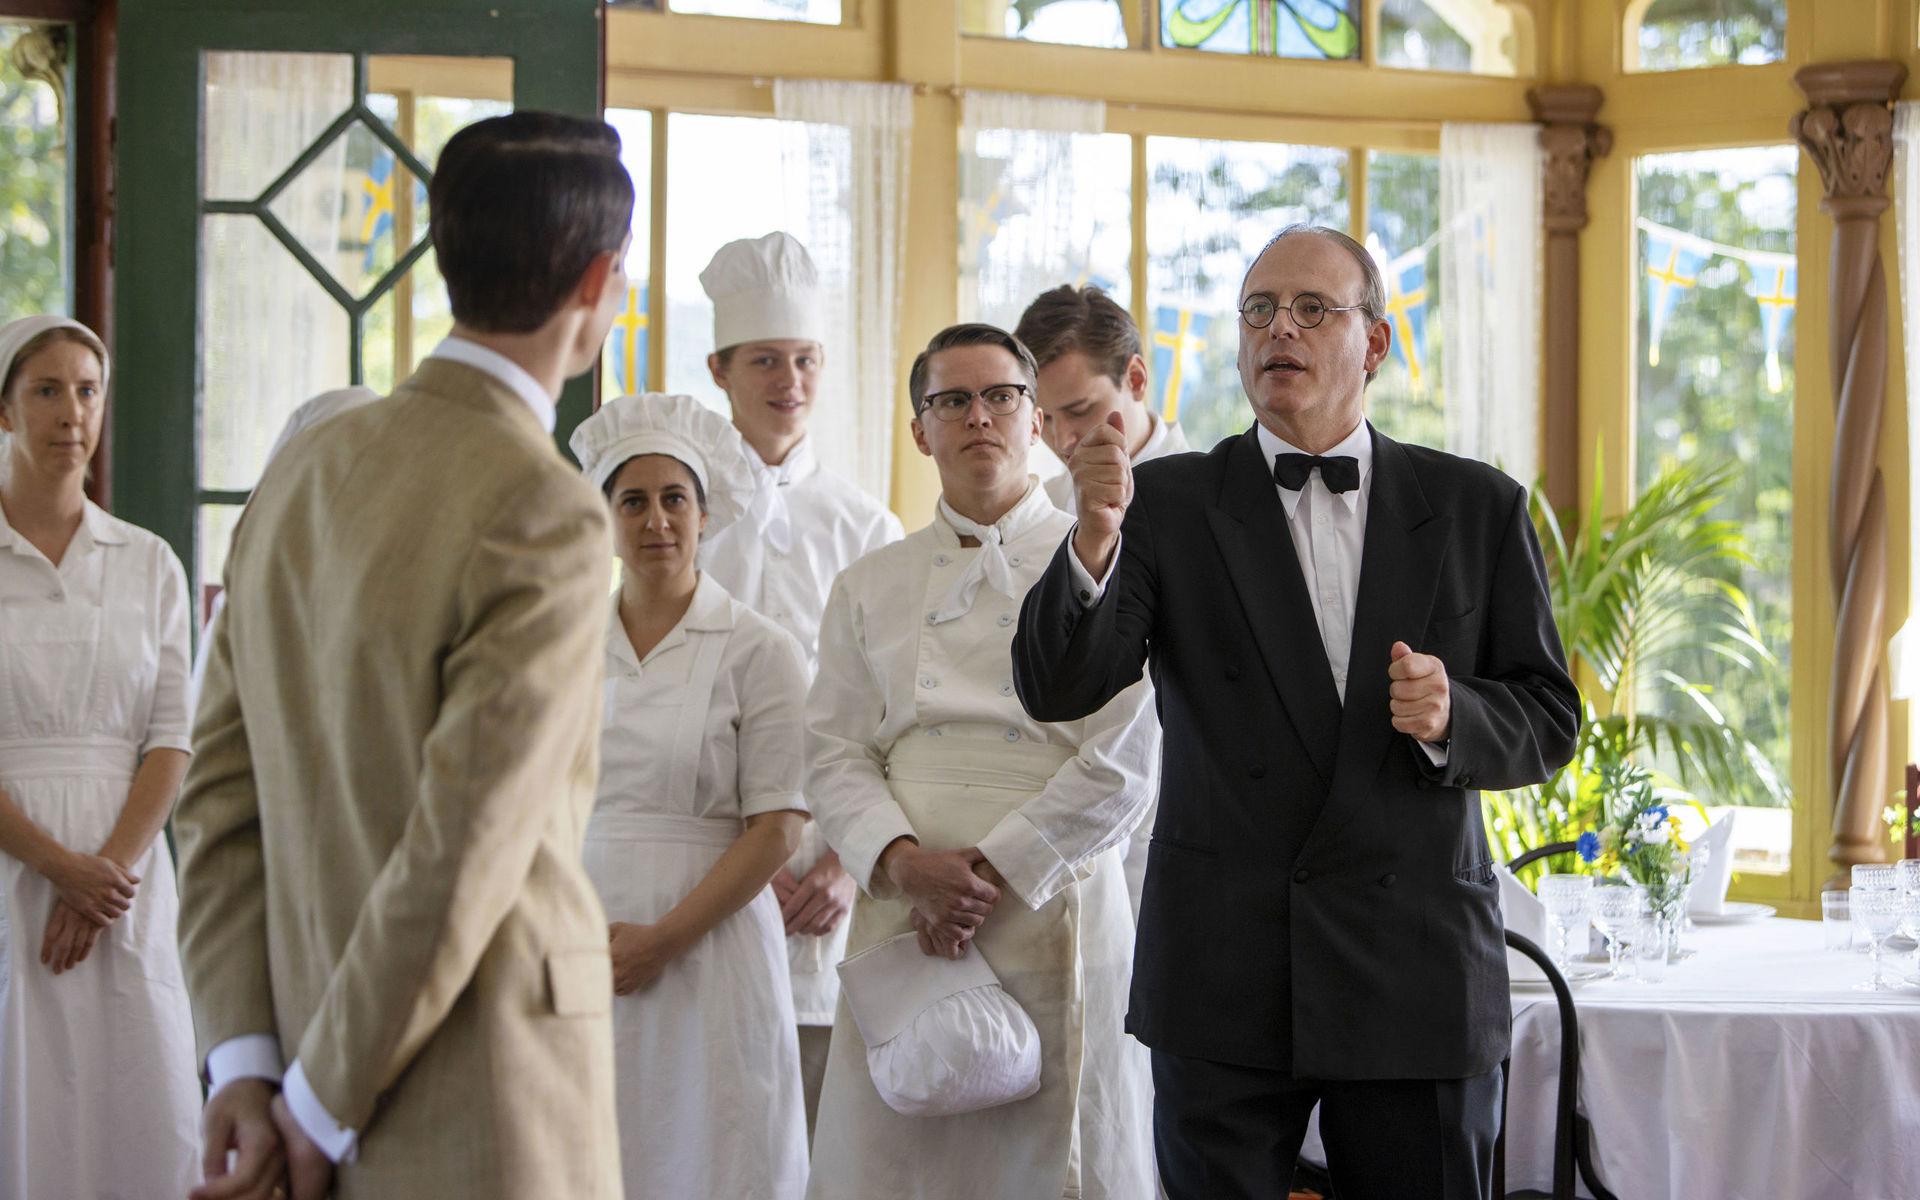 Hovmästaren Bellan (Rasmus Troedsson) hänger med till familjen Löwanders sommarrestaurang. Här delar han ut order till personalen. Restaurangens interiör är filmad i huset Vänhem, som ligger vid Nääs slott.